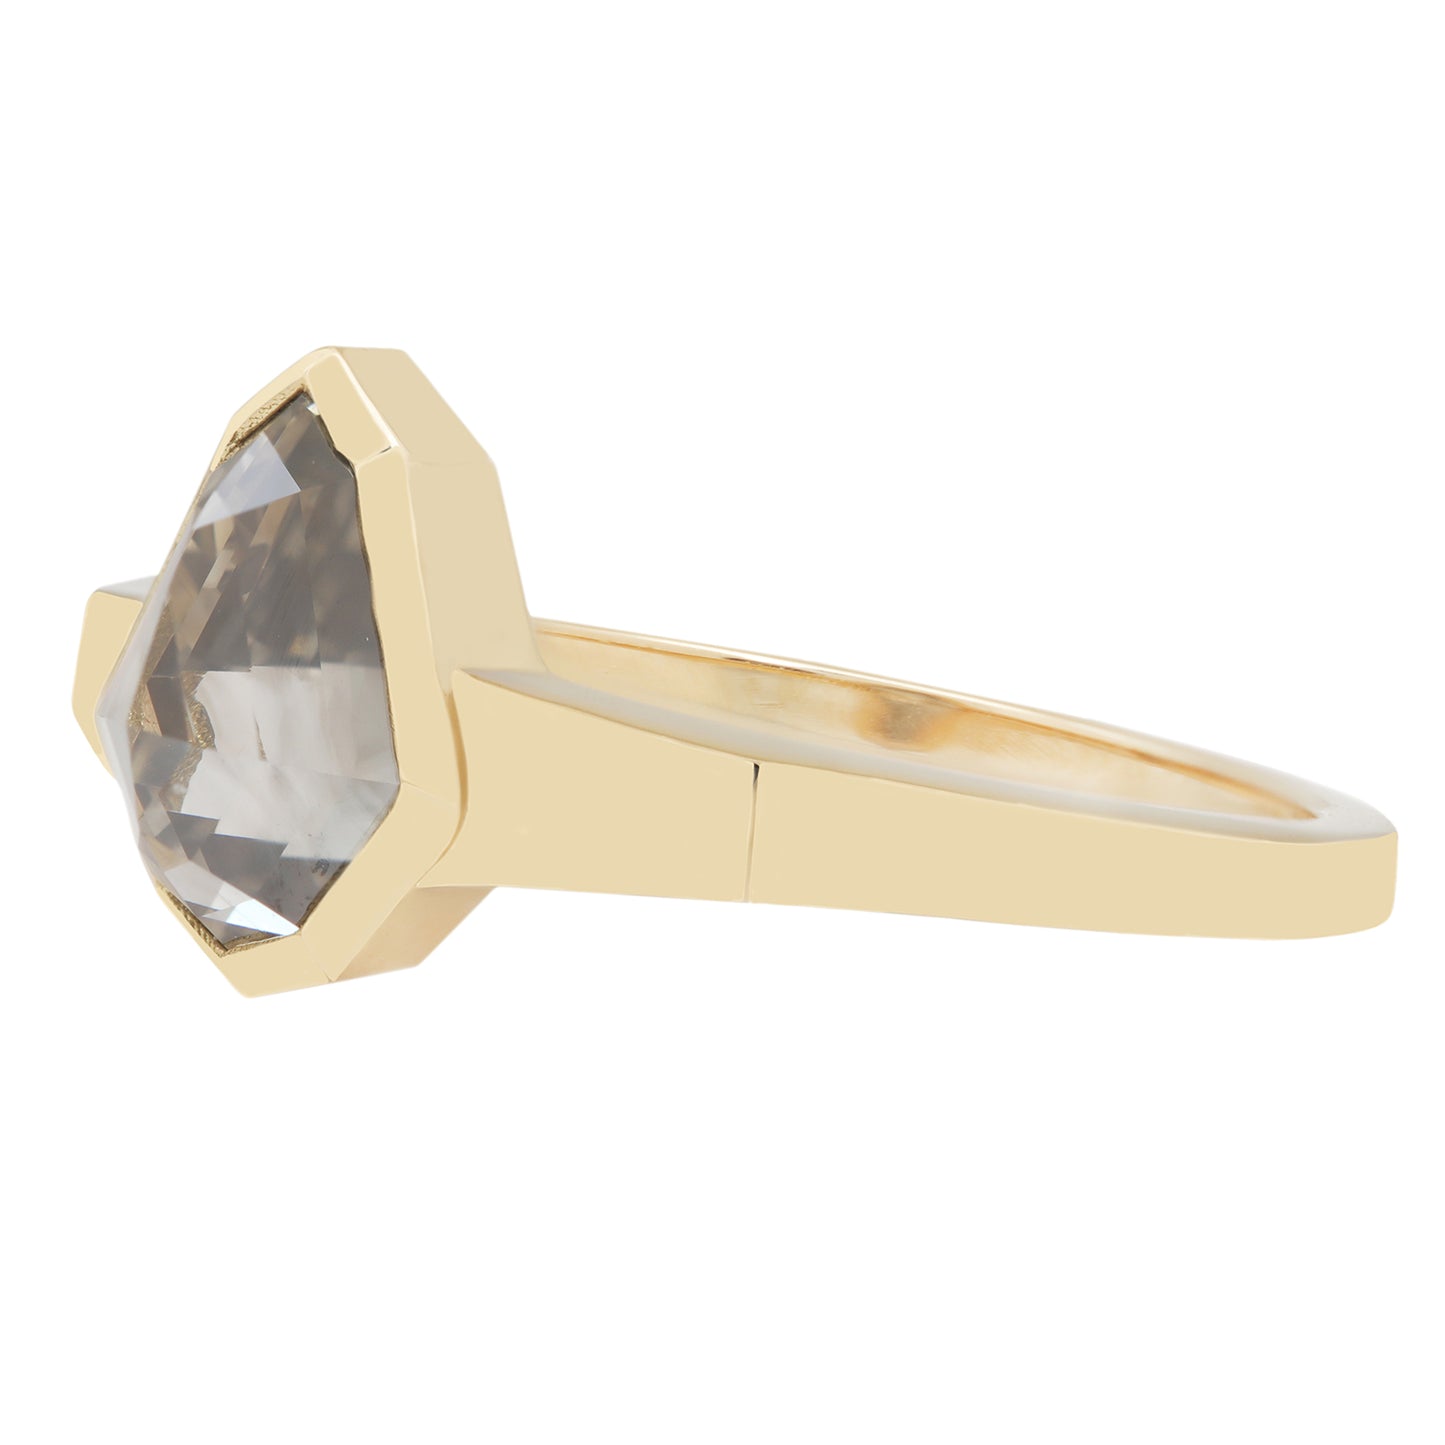 Guiding Light Diamond Ring